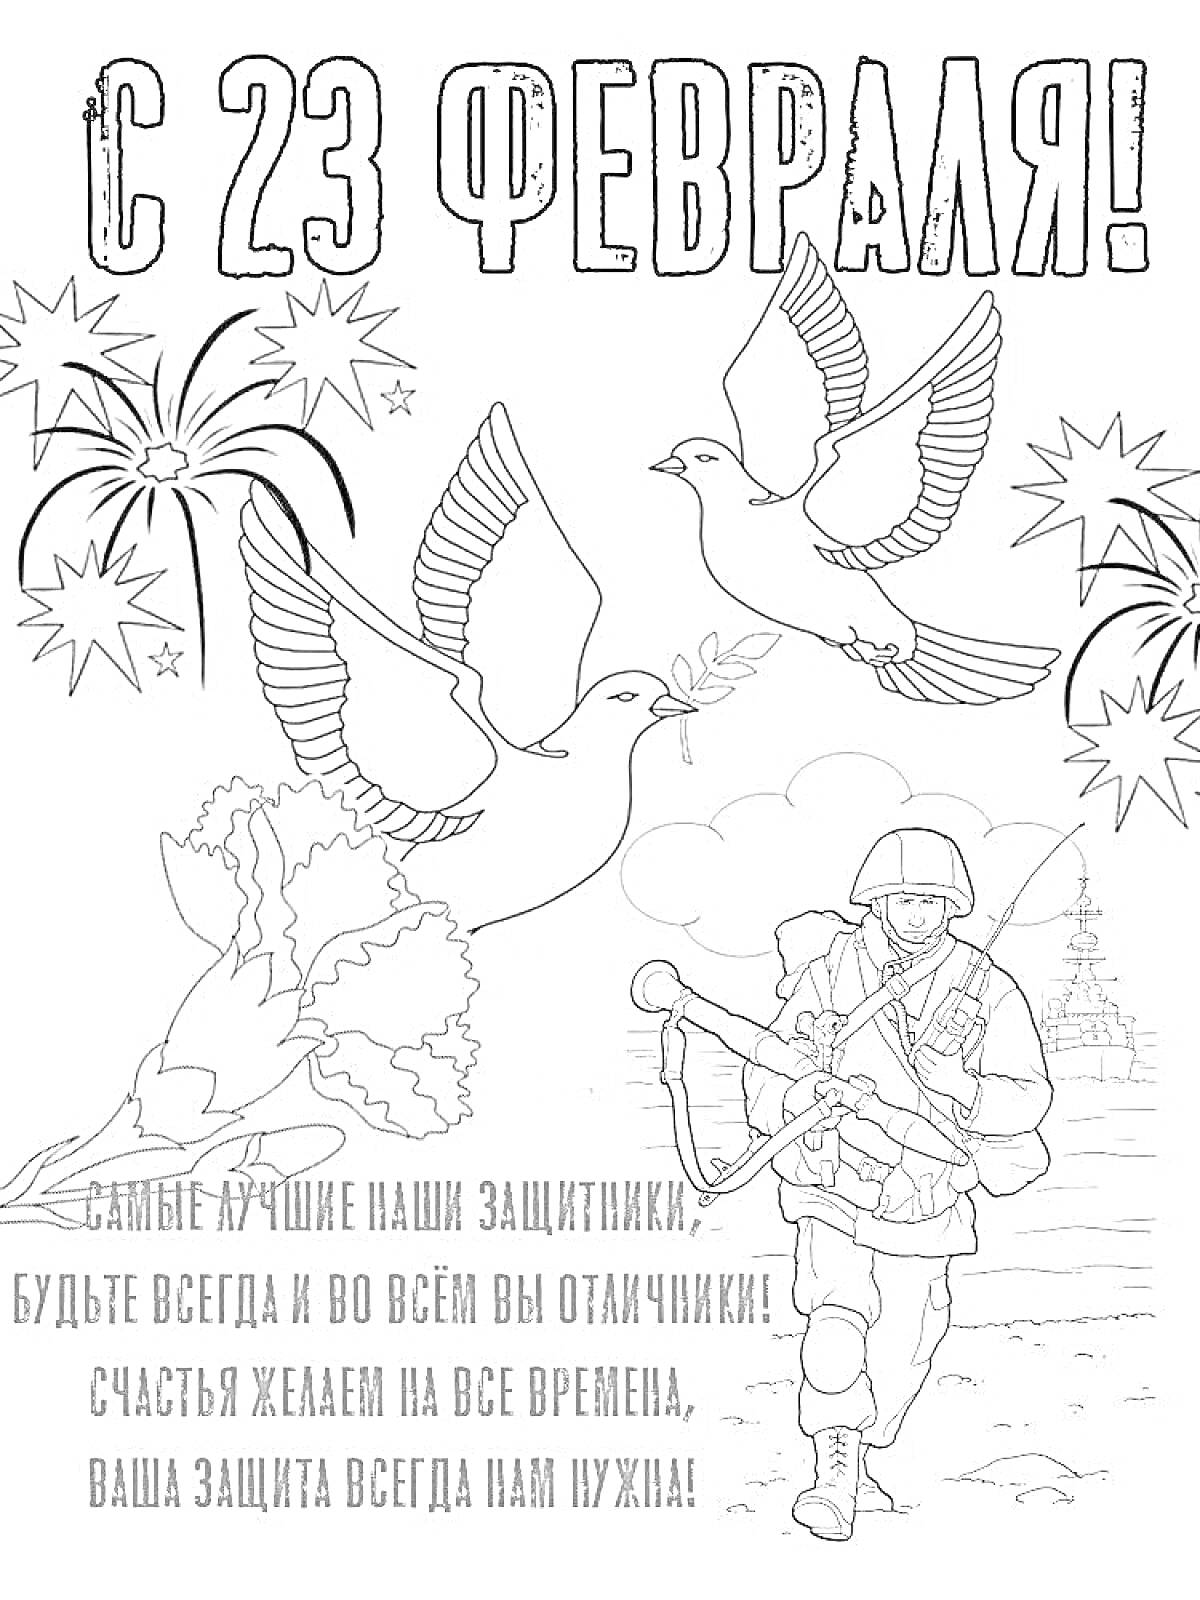 Раскраска День защитника отечества 23 февраля: солдат с автоматом, голуби, фейерверки, поздравительный текст